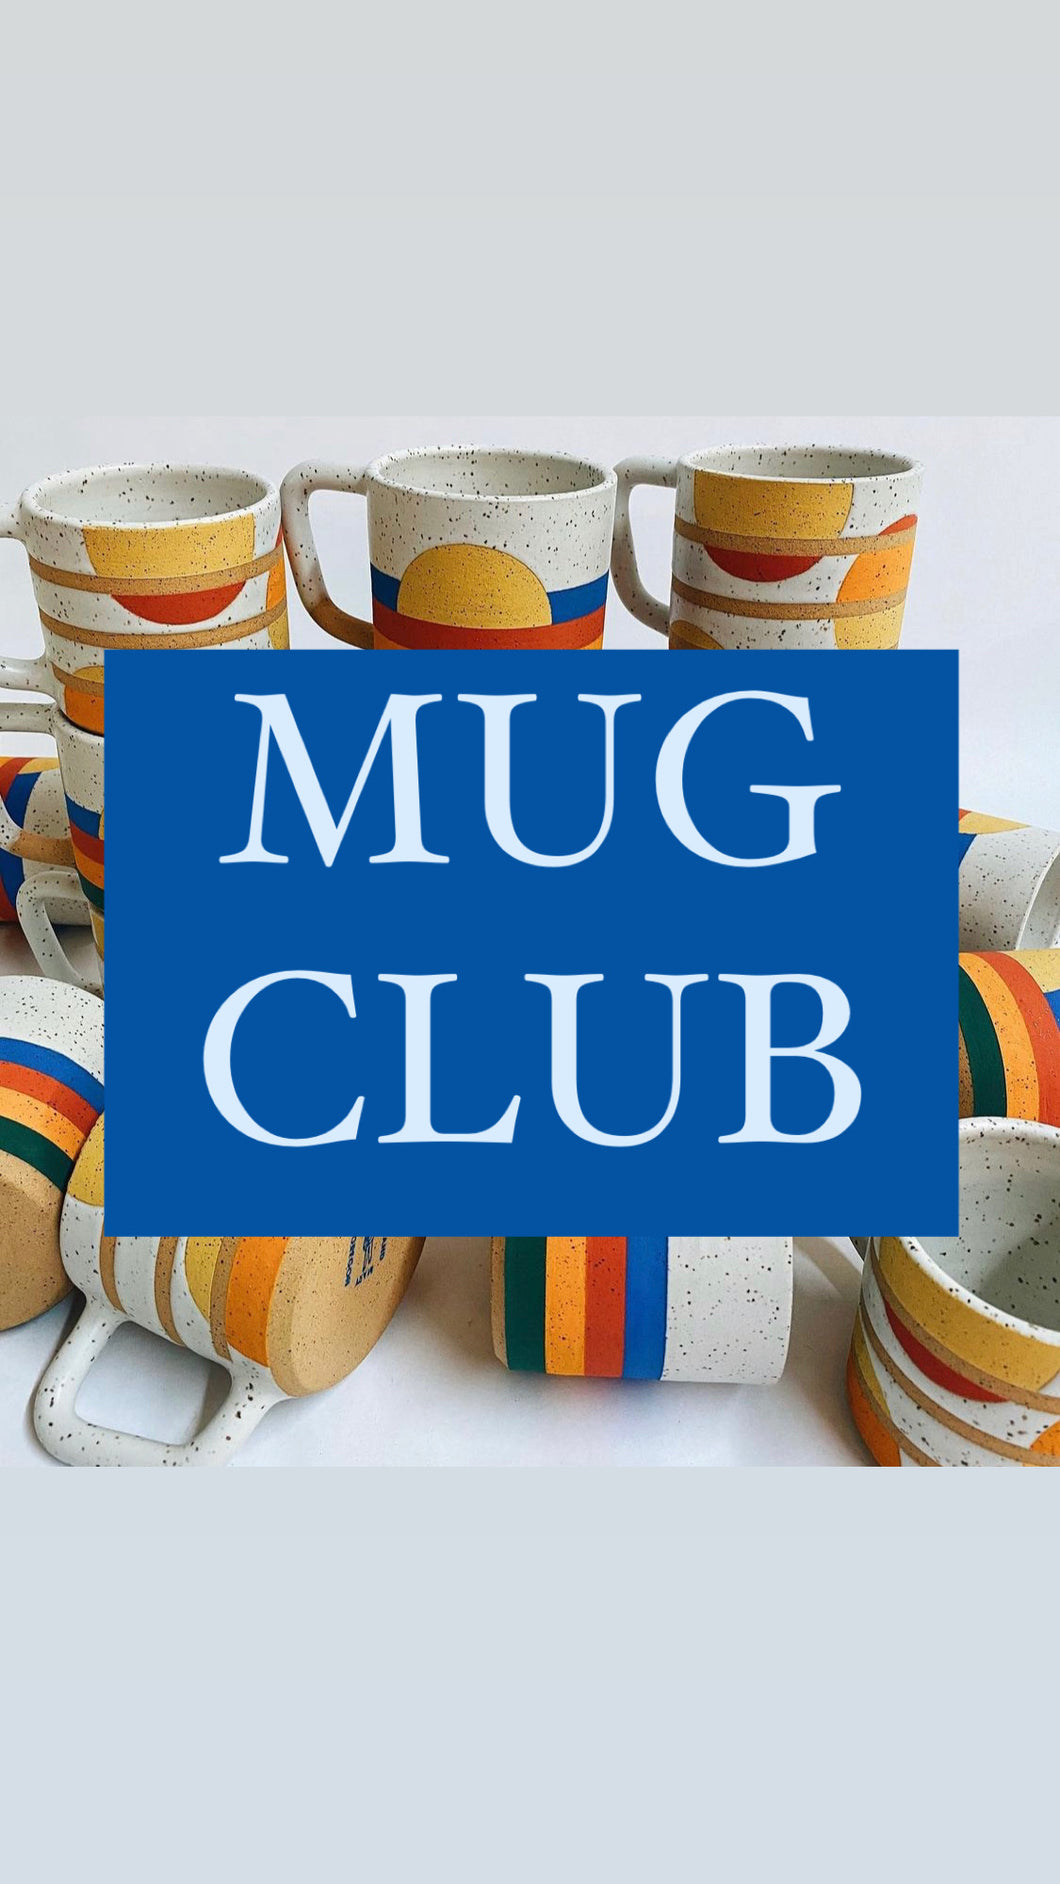 Mug club!